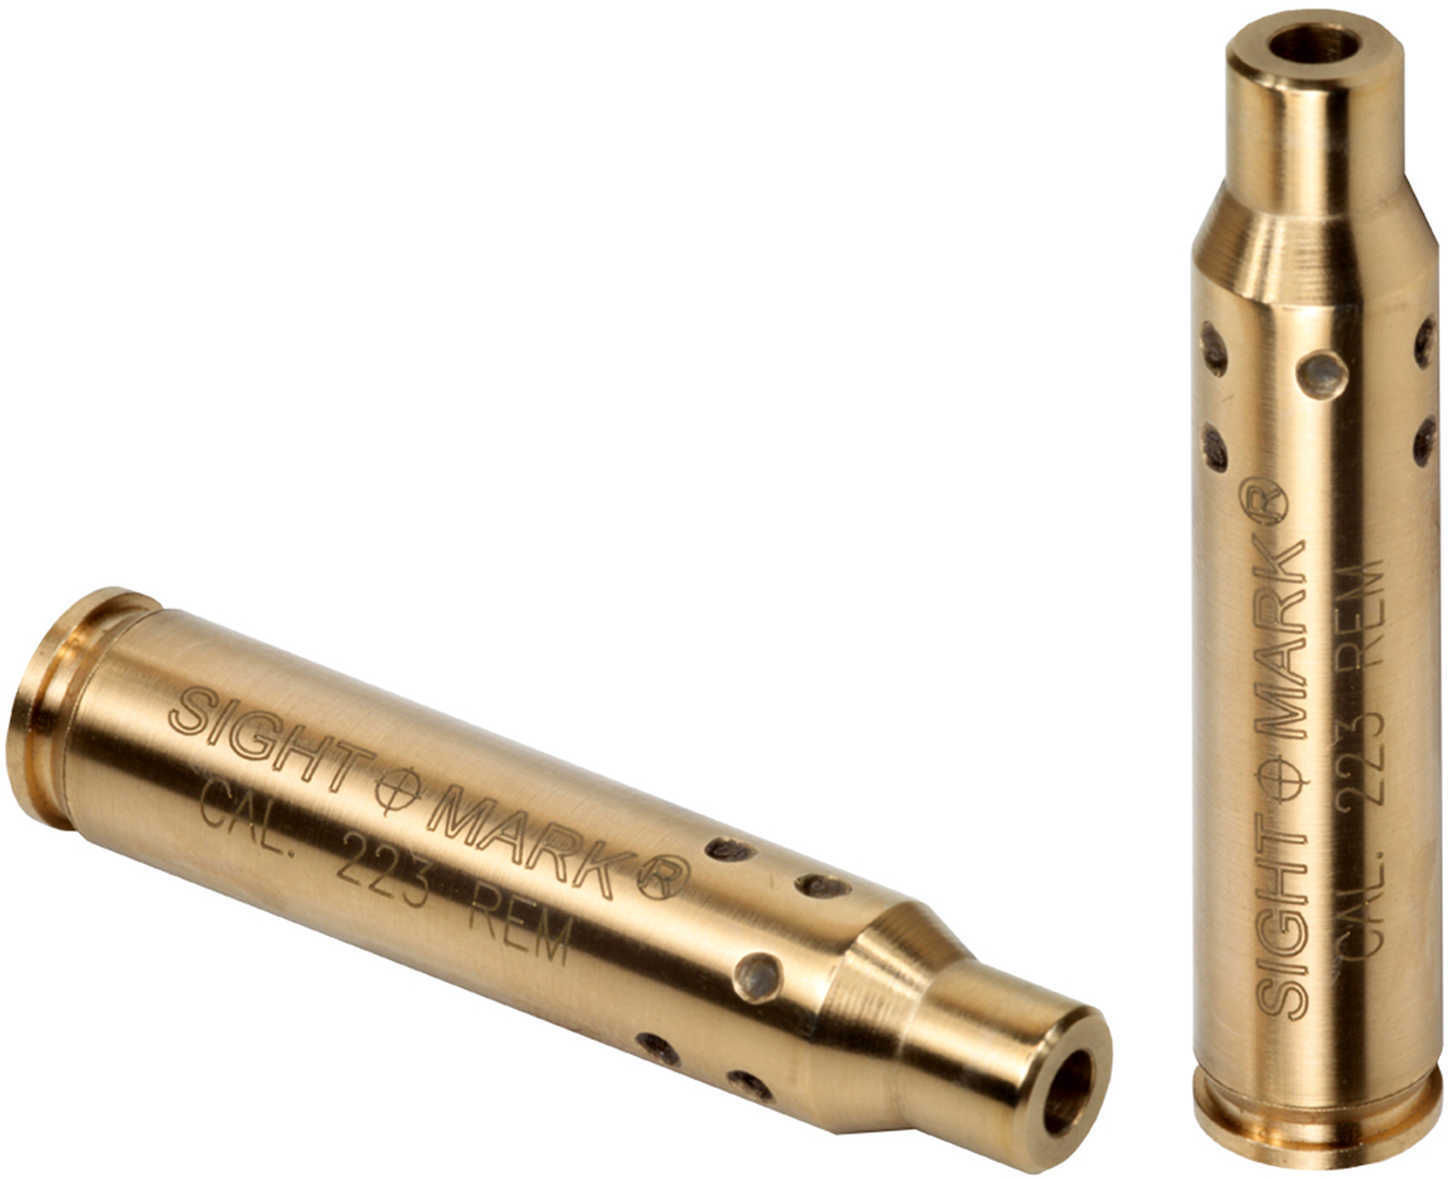 Sightmark SM39002 Laser Boresighter Cartridge 7.62x39mm Chamber Brass